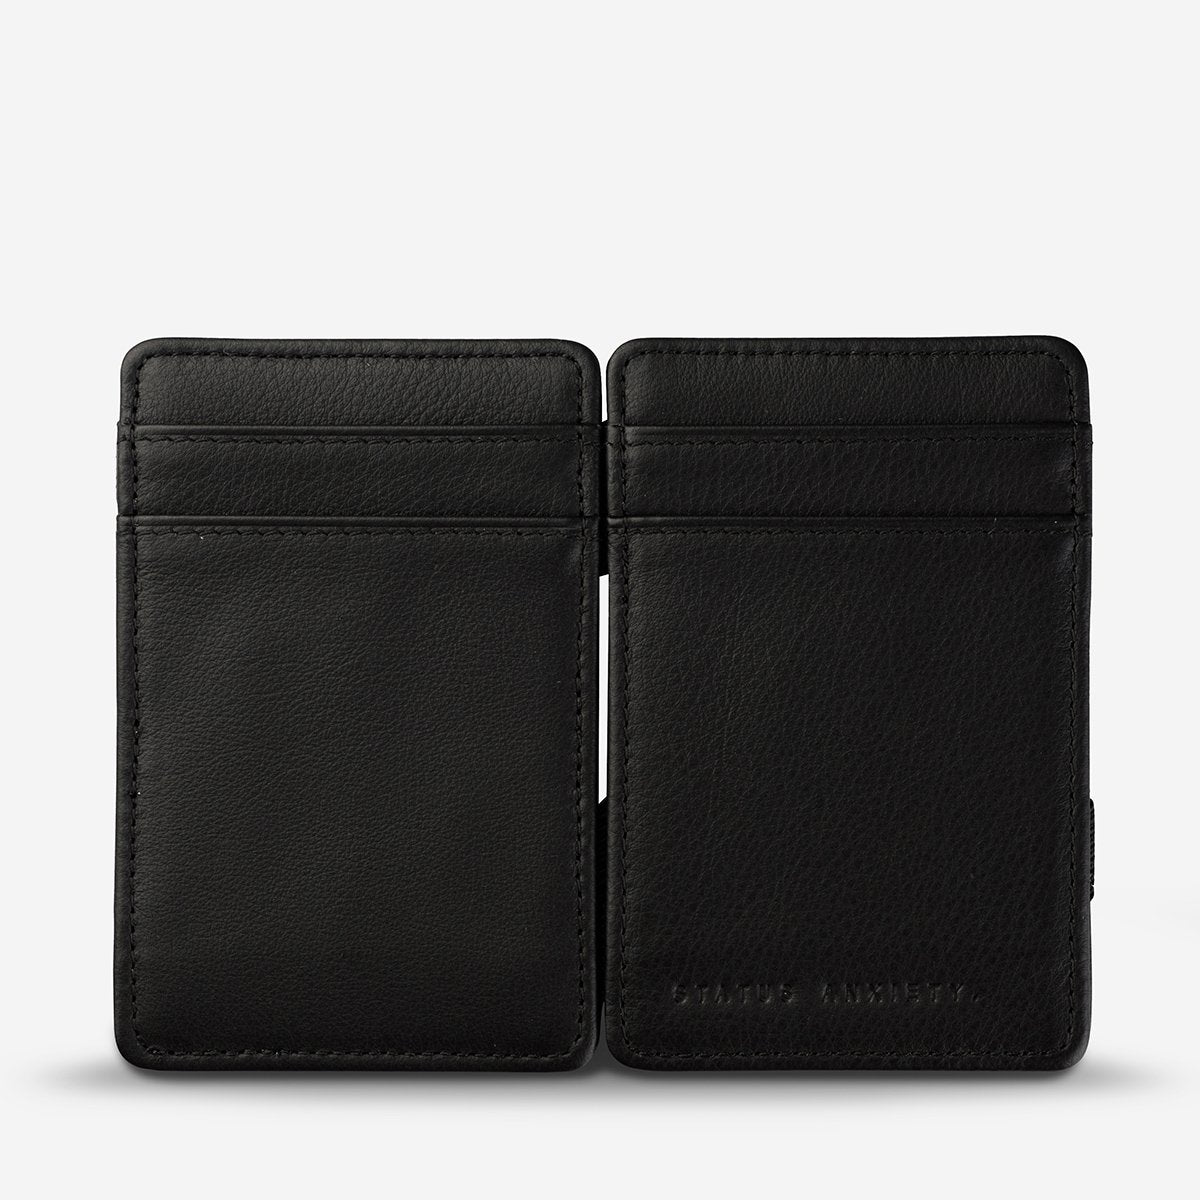 Status Anxiety - Flip Wallet in Black